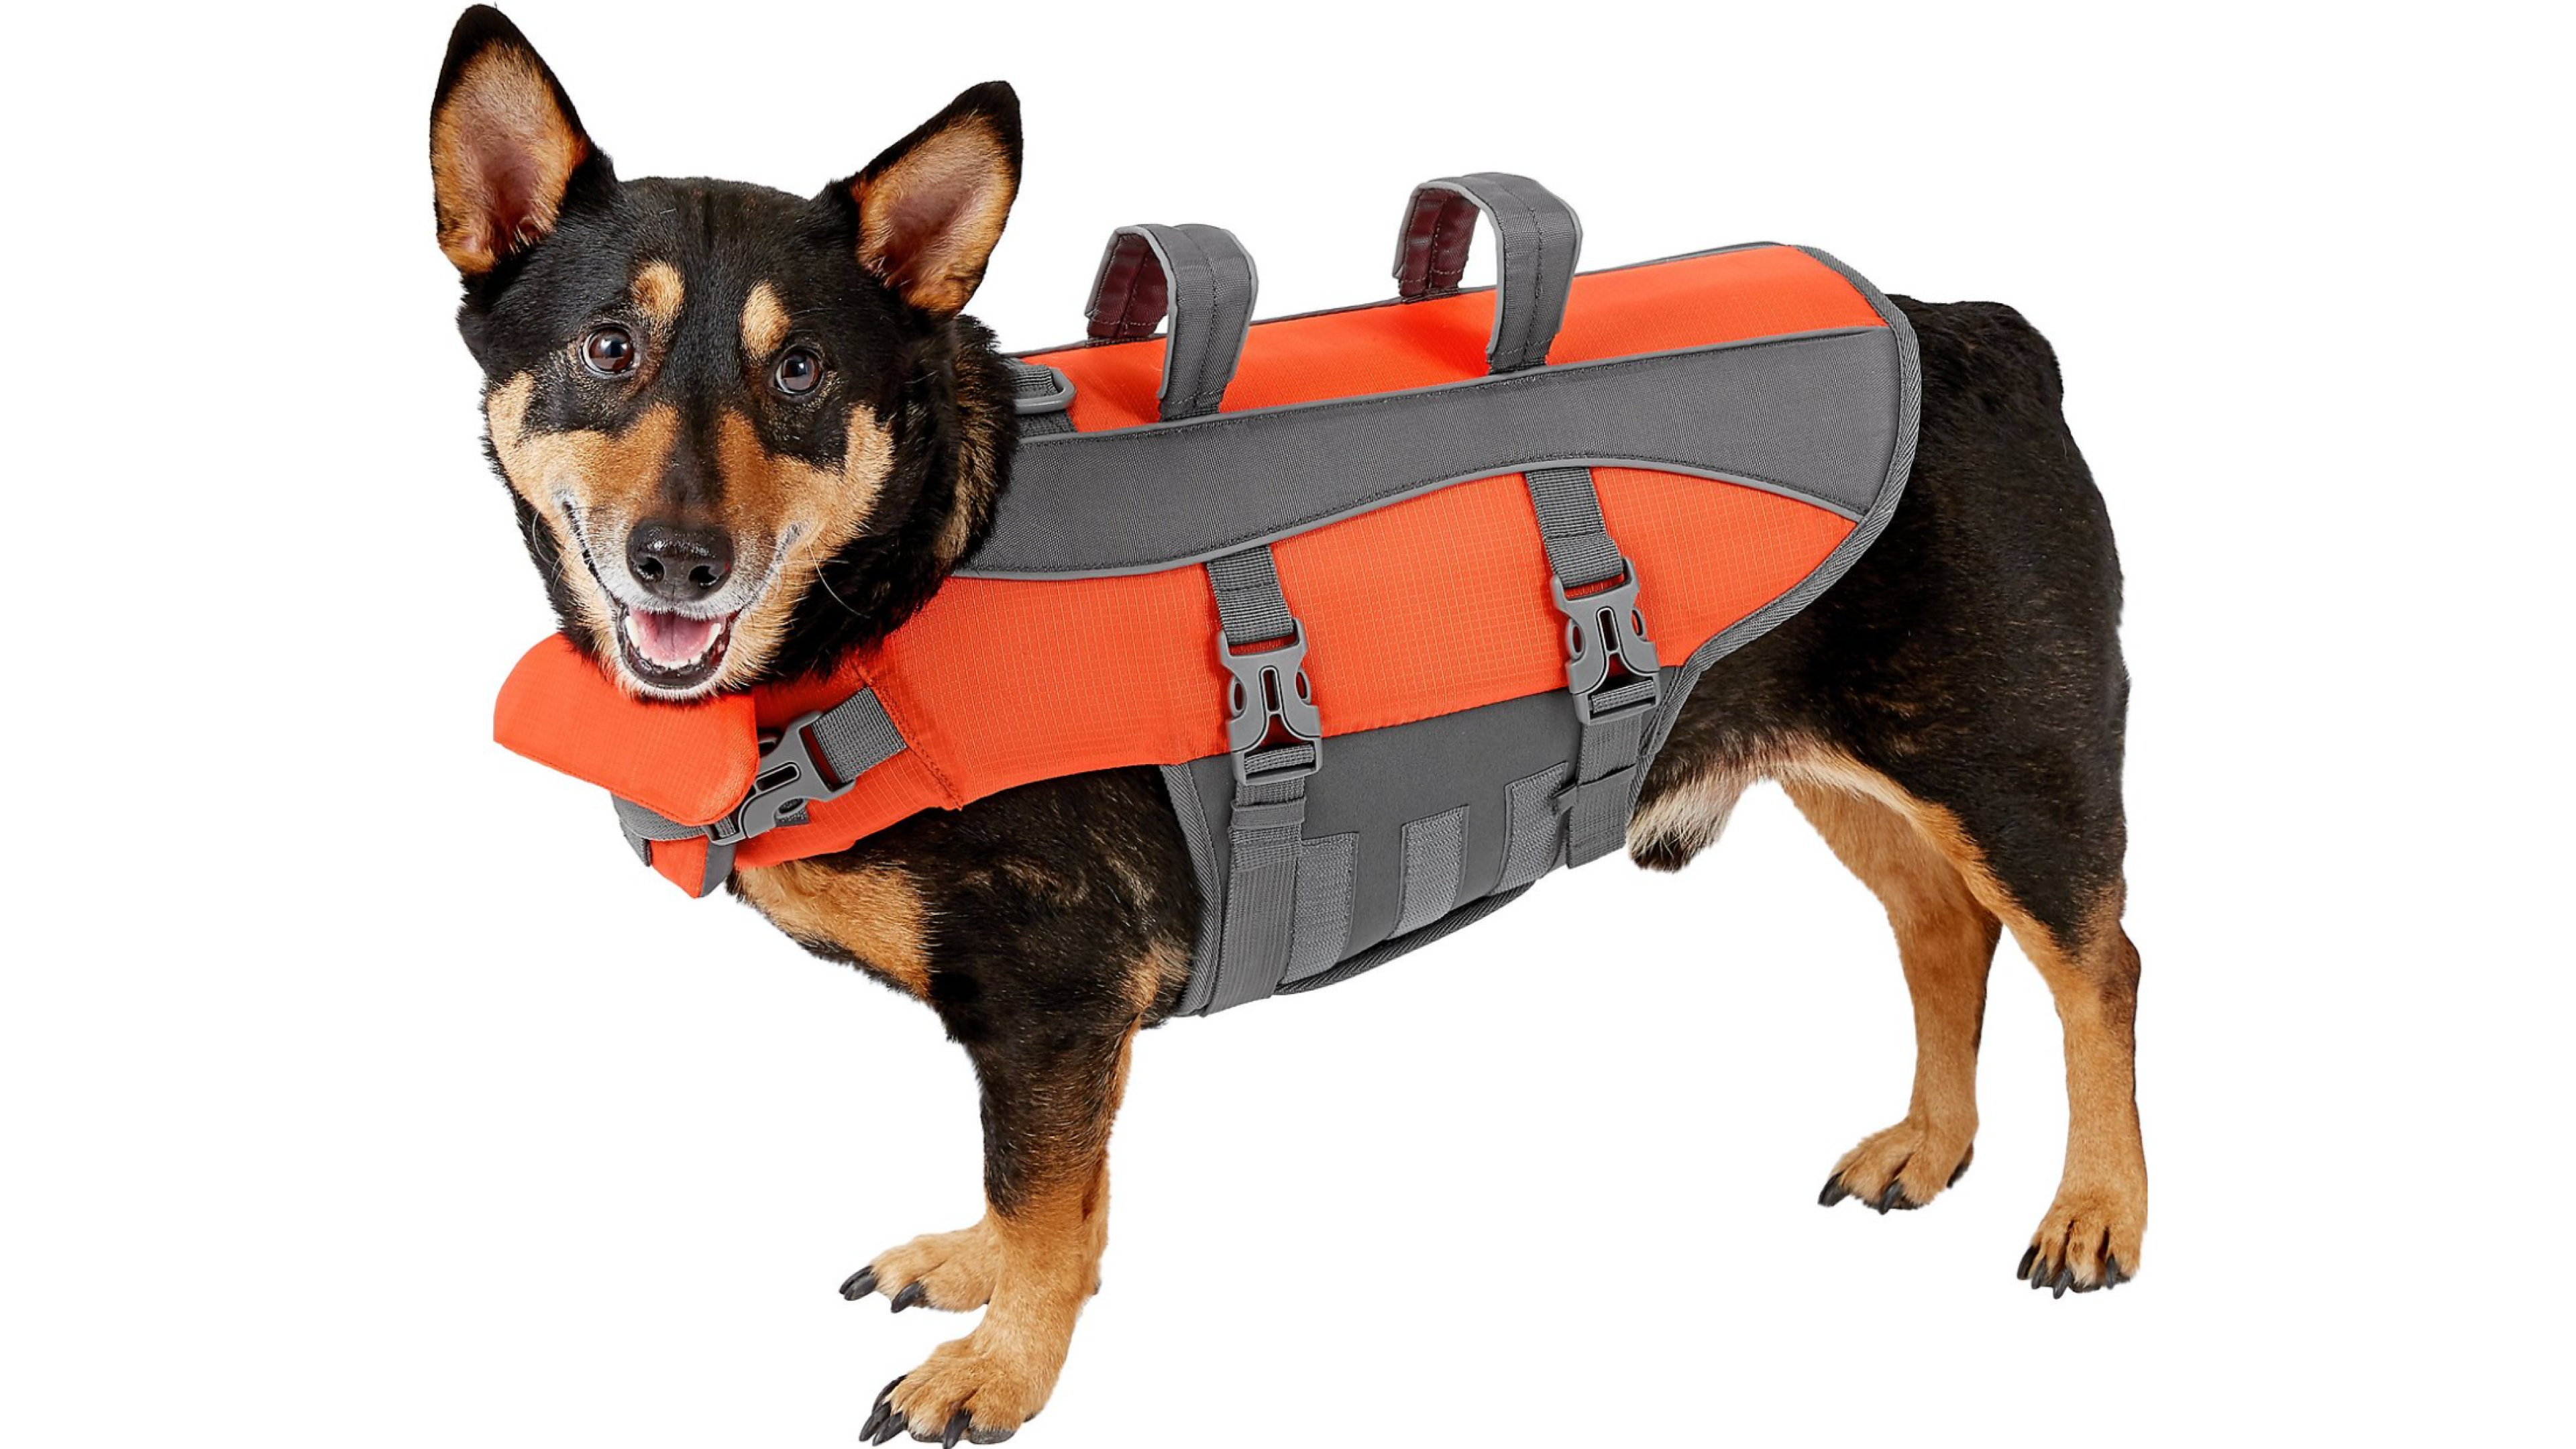 Dog with Orange Life Jacket 